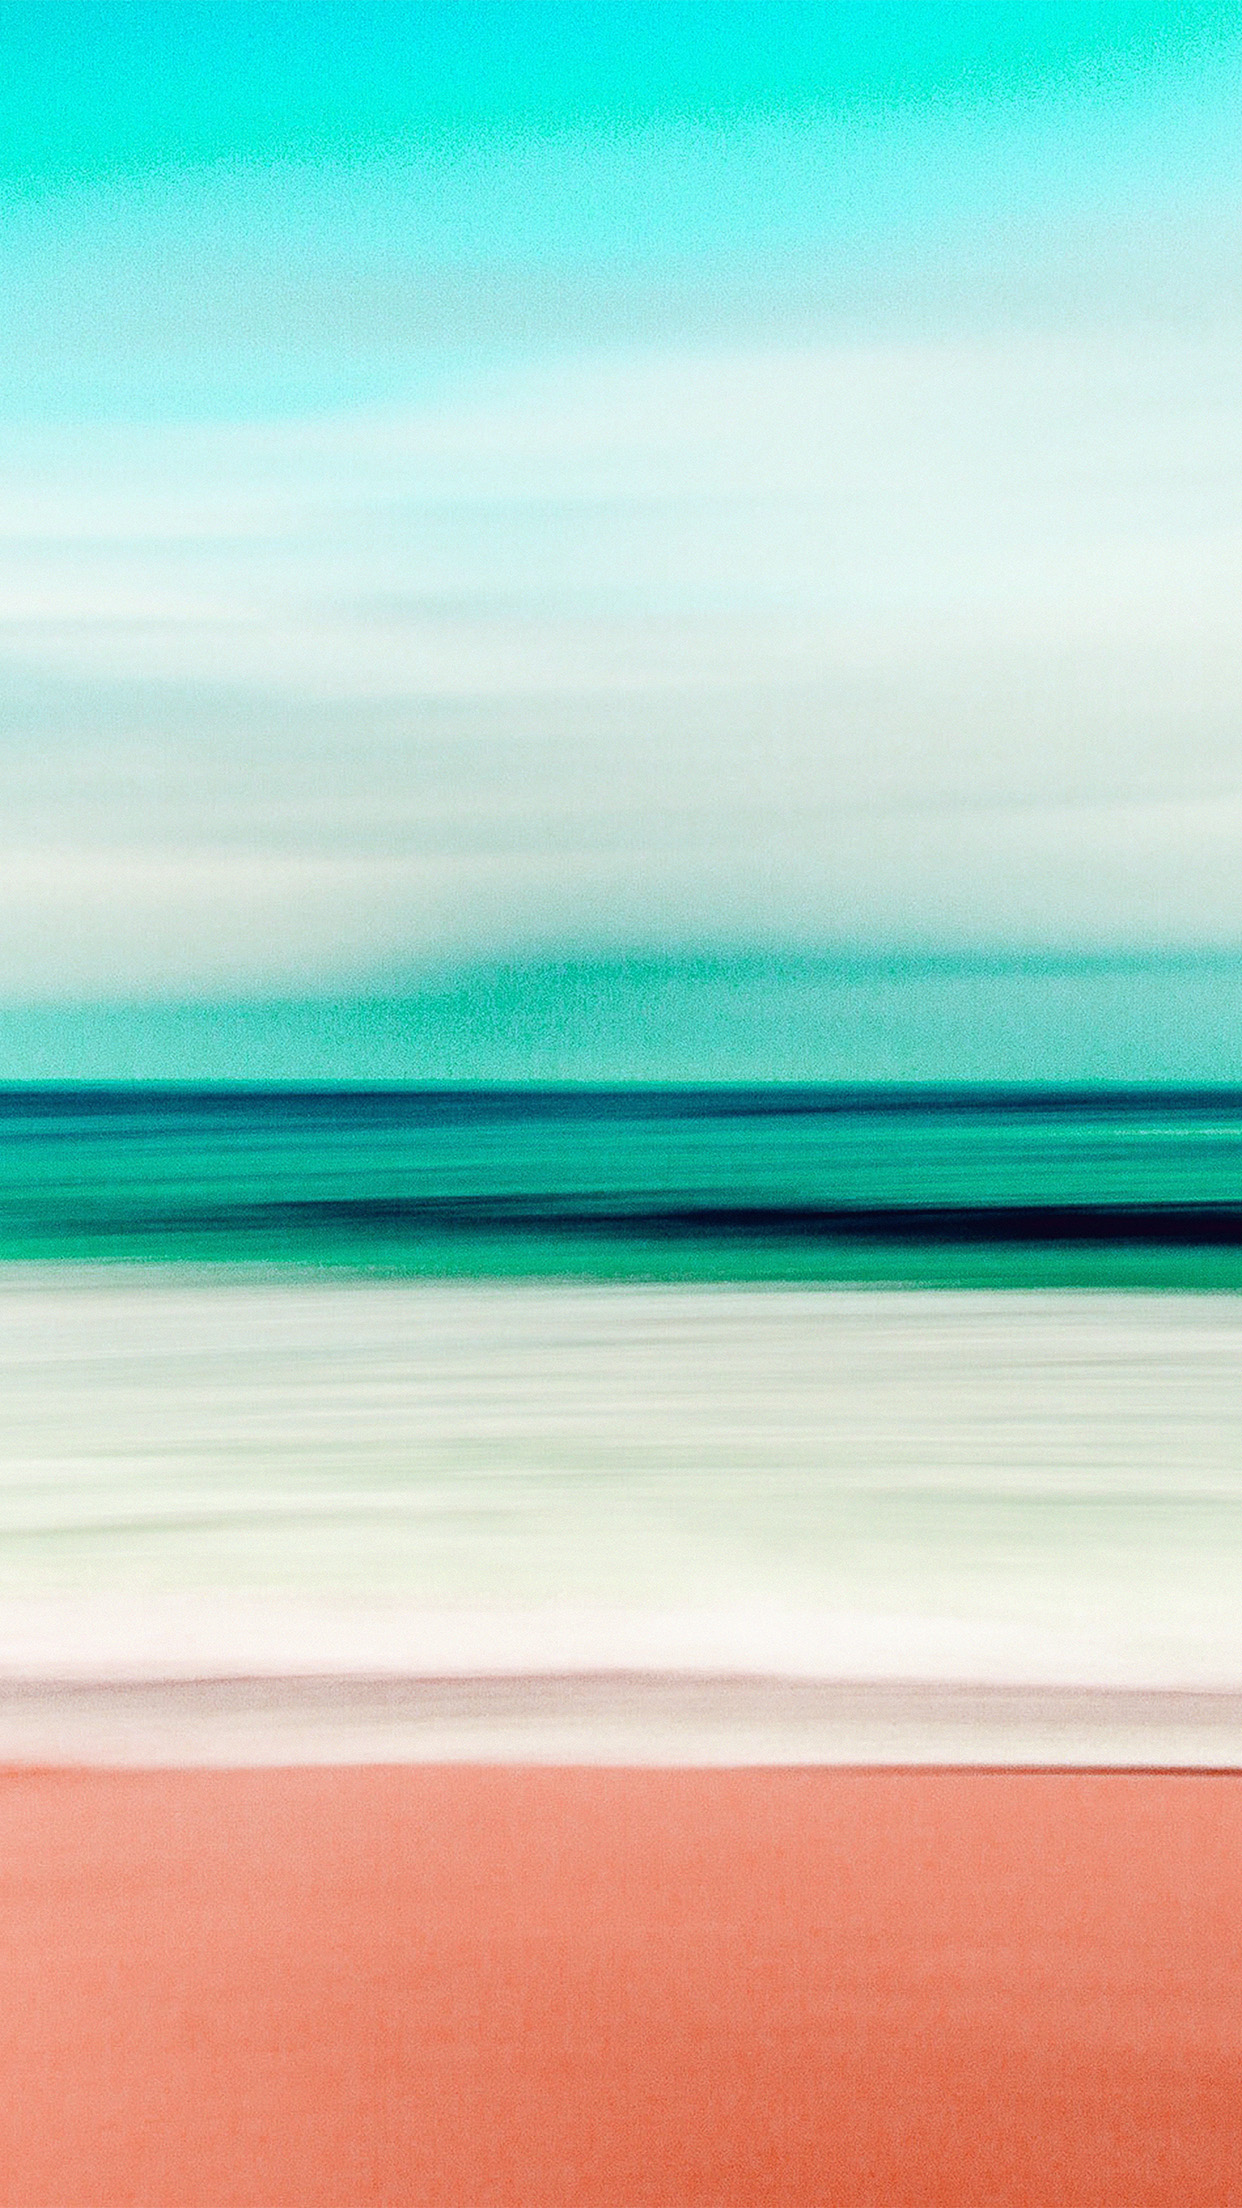 iPhone X wallpaper. beach ocean water summer green